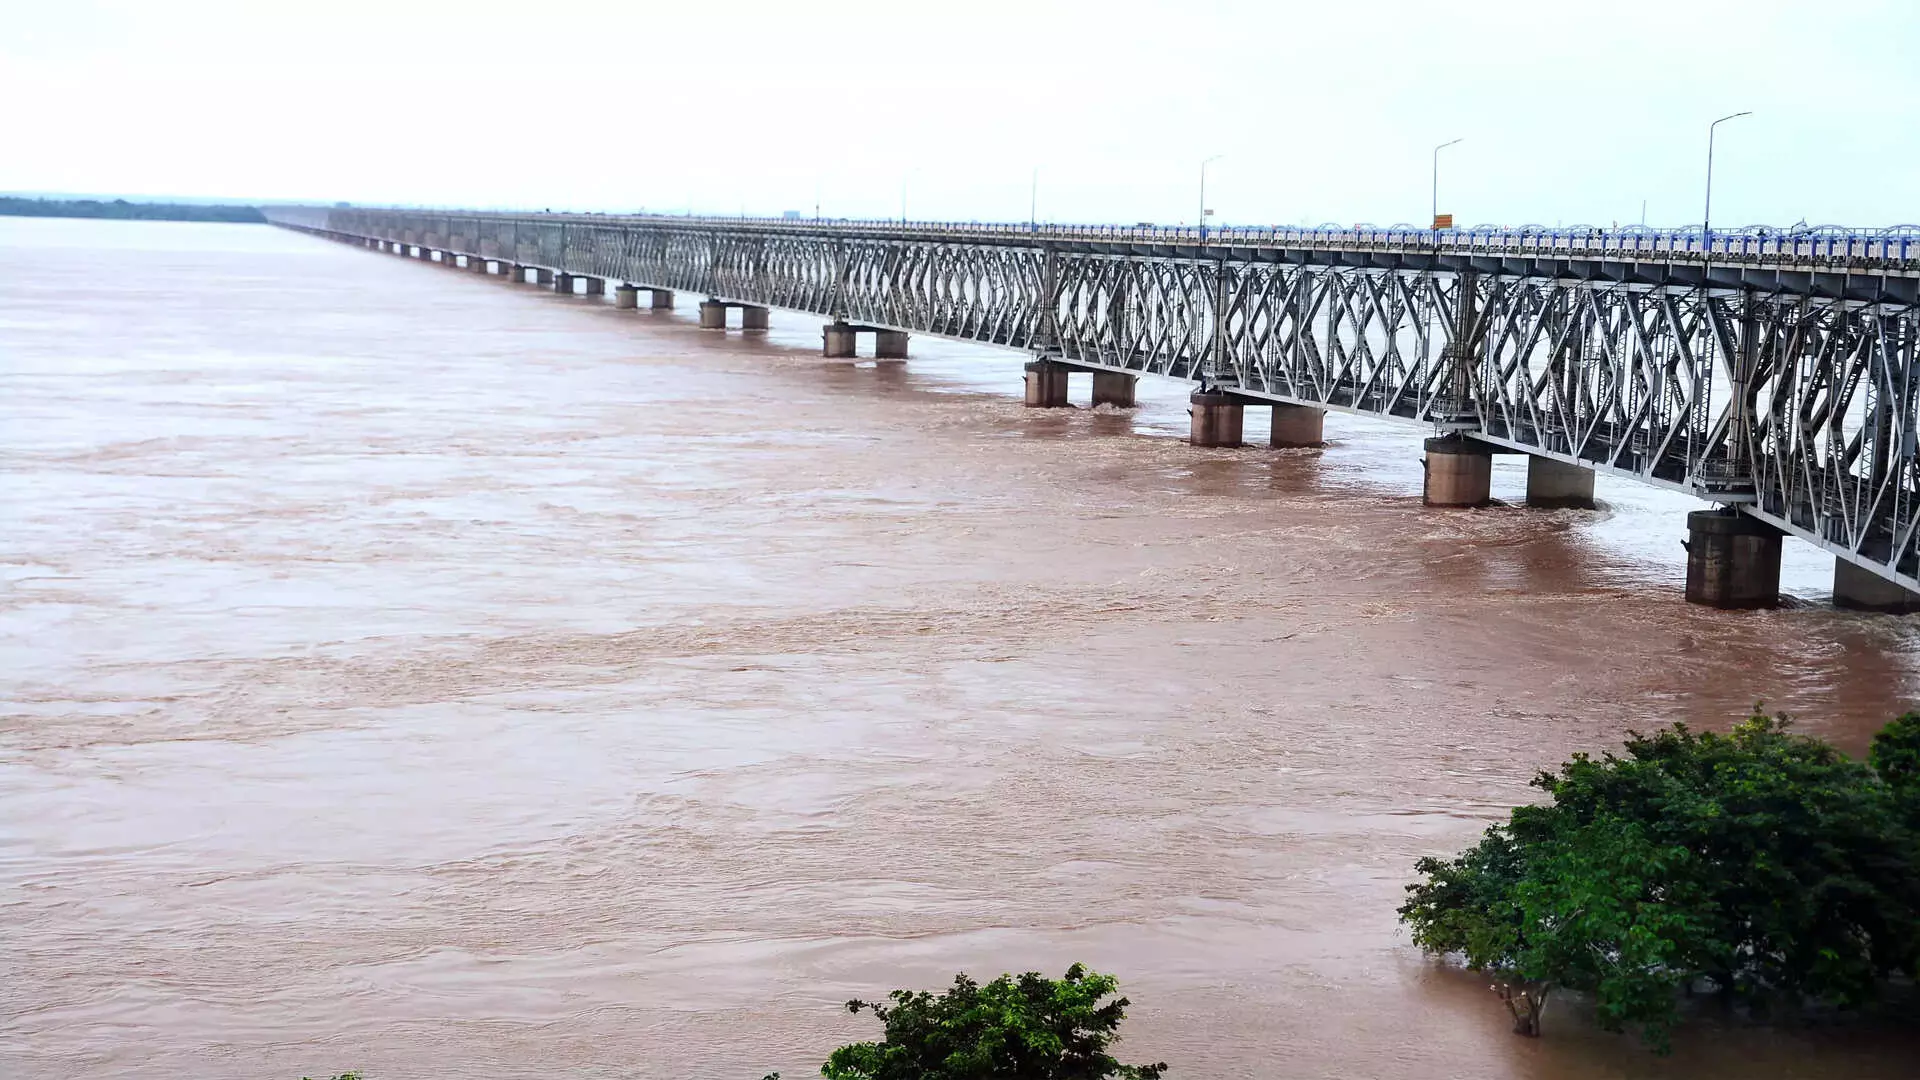 Godavari नदी का जलस्तर 53 फीट तक पहुंचने के कारण 8,000 लोगों को निकाला गया